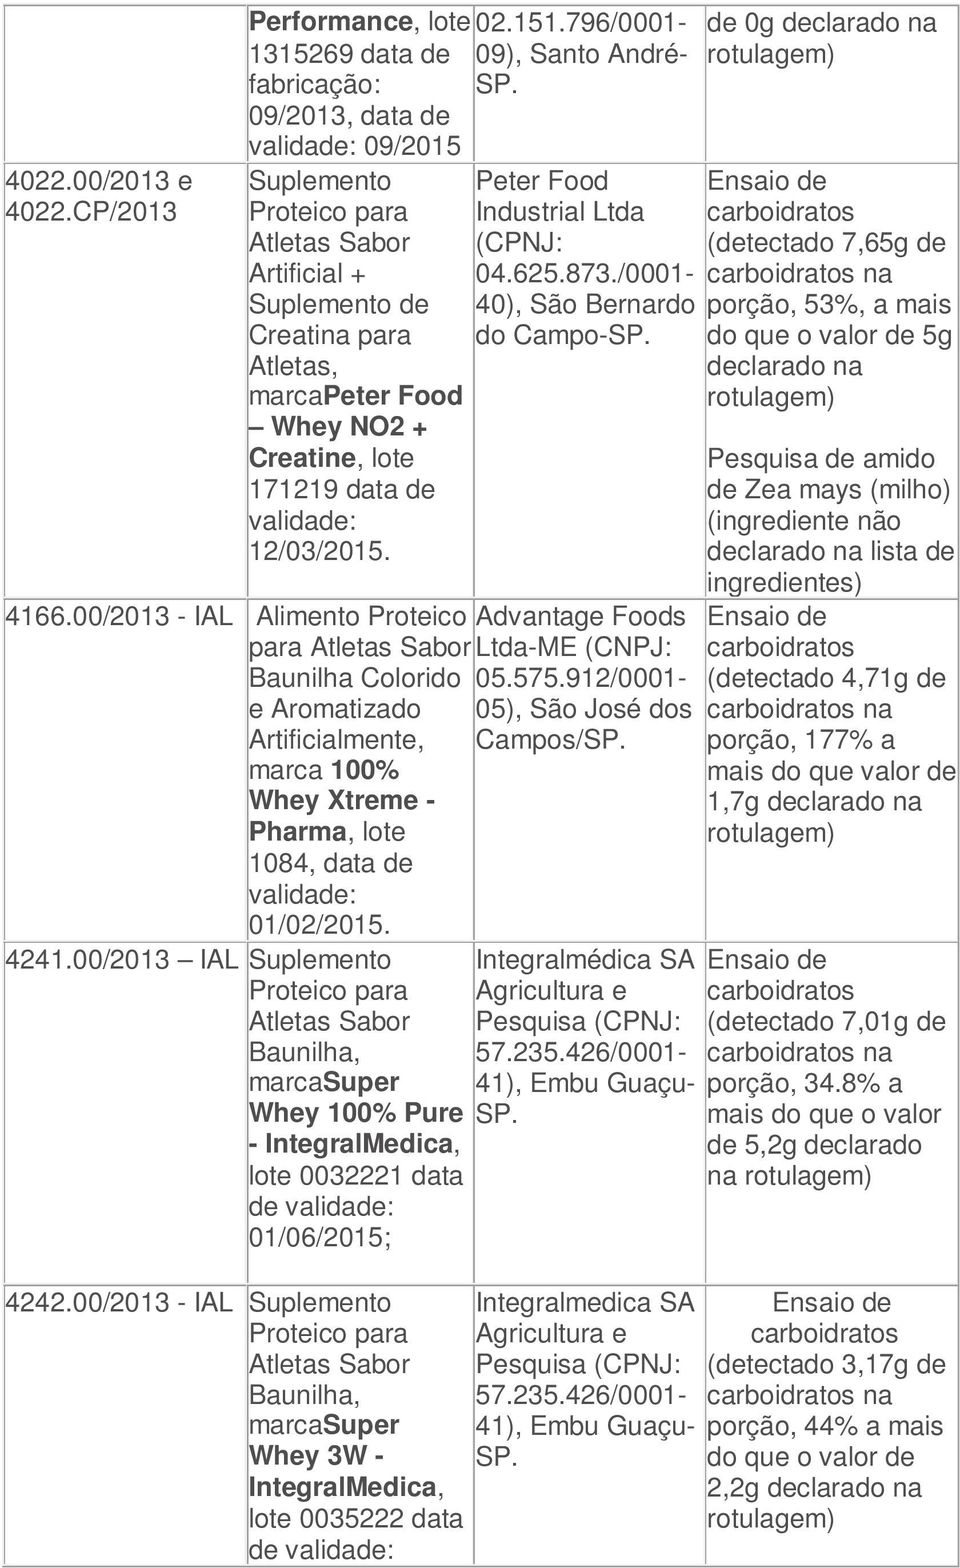 4166.00/2013 - IAL Alimento Proteico Advantage Foods para Ltda-ME (CNPJ: Baunilha Colorido 05.575.912/0001- e Aromatizado 05), São José dos Artificialmente, Campos/SP.